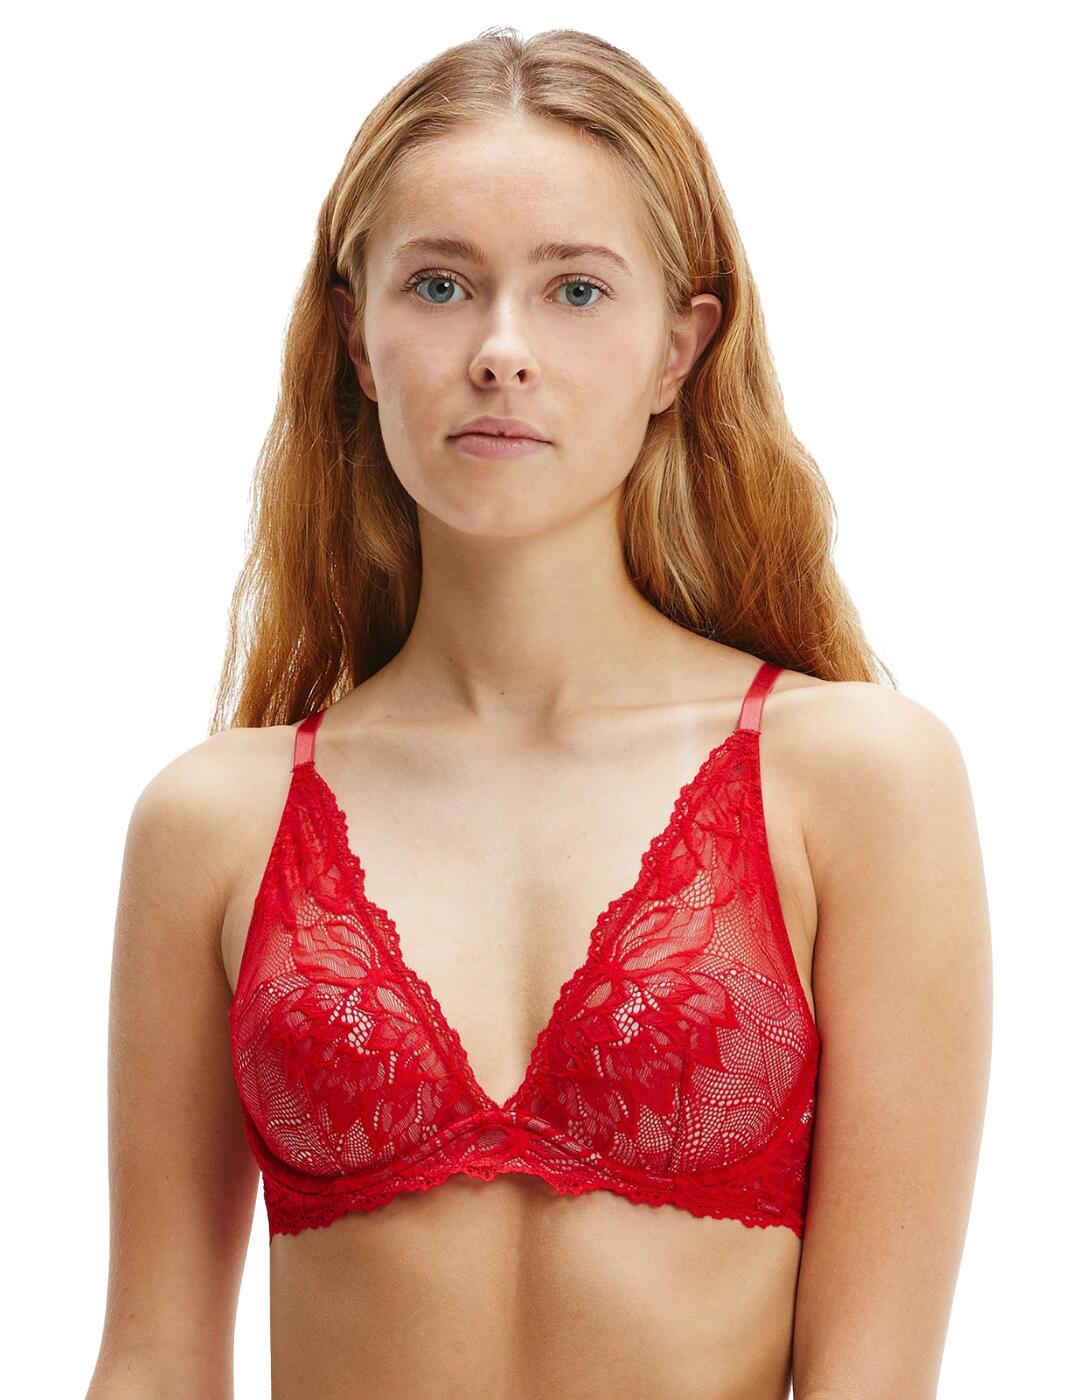 Calvin Klein Women's Horizon Seamless Lightly Lined Bralette, Red